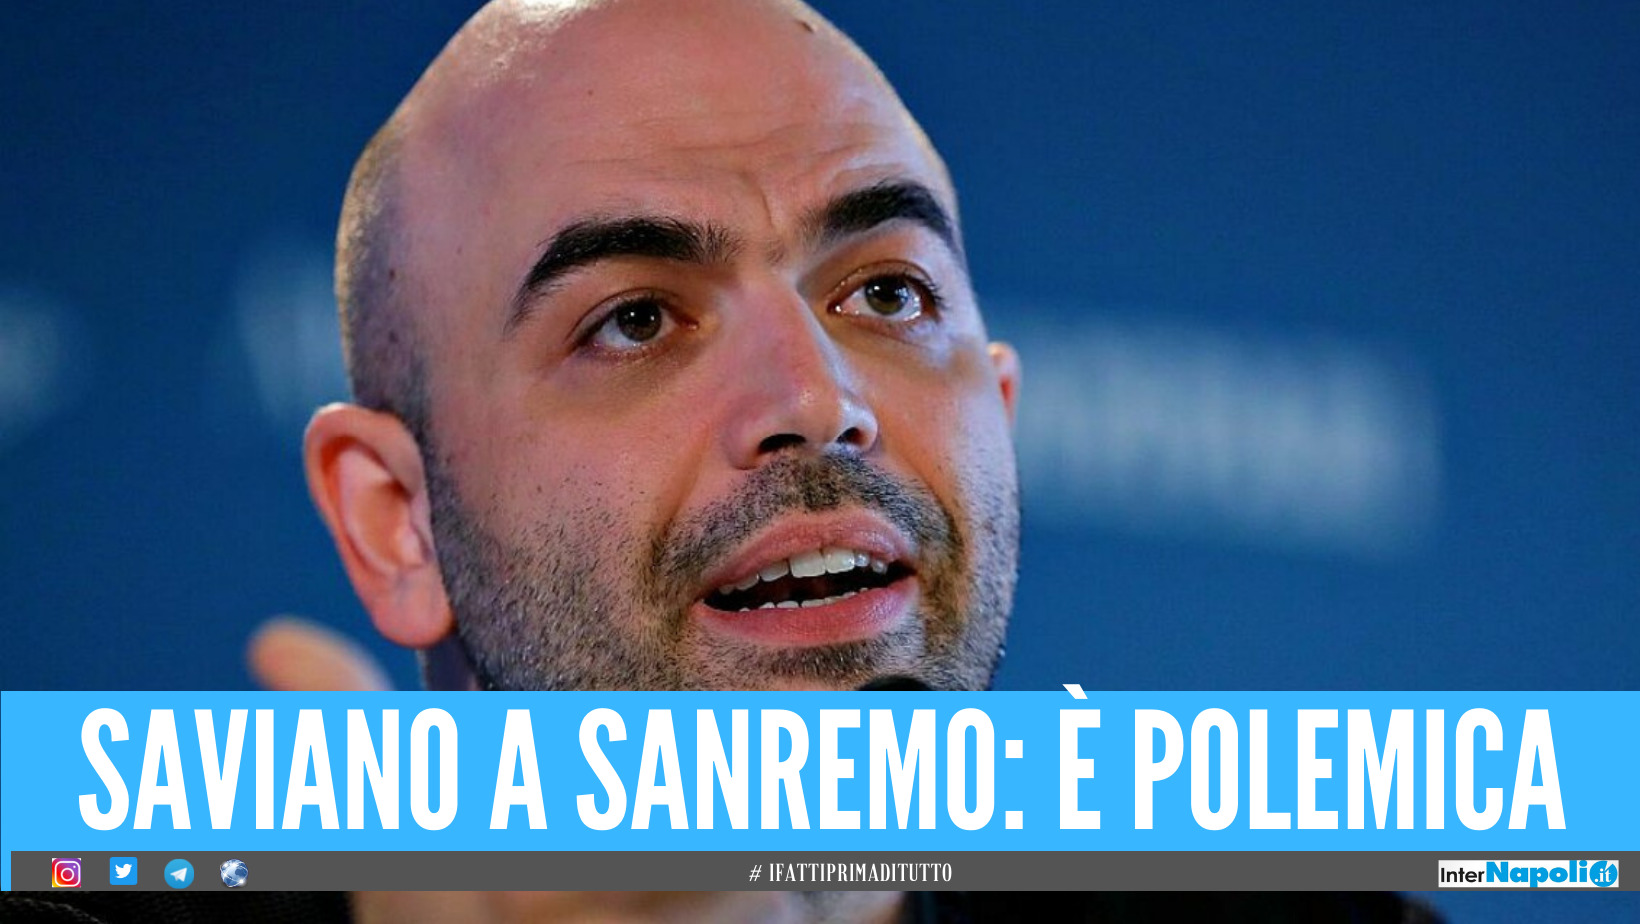 Saviano stasera ospite a Sanremo, ma è già polemica sul suo intervento: "Ha lucrato su mafia e camorra"